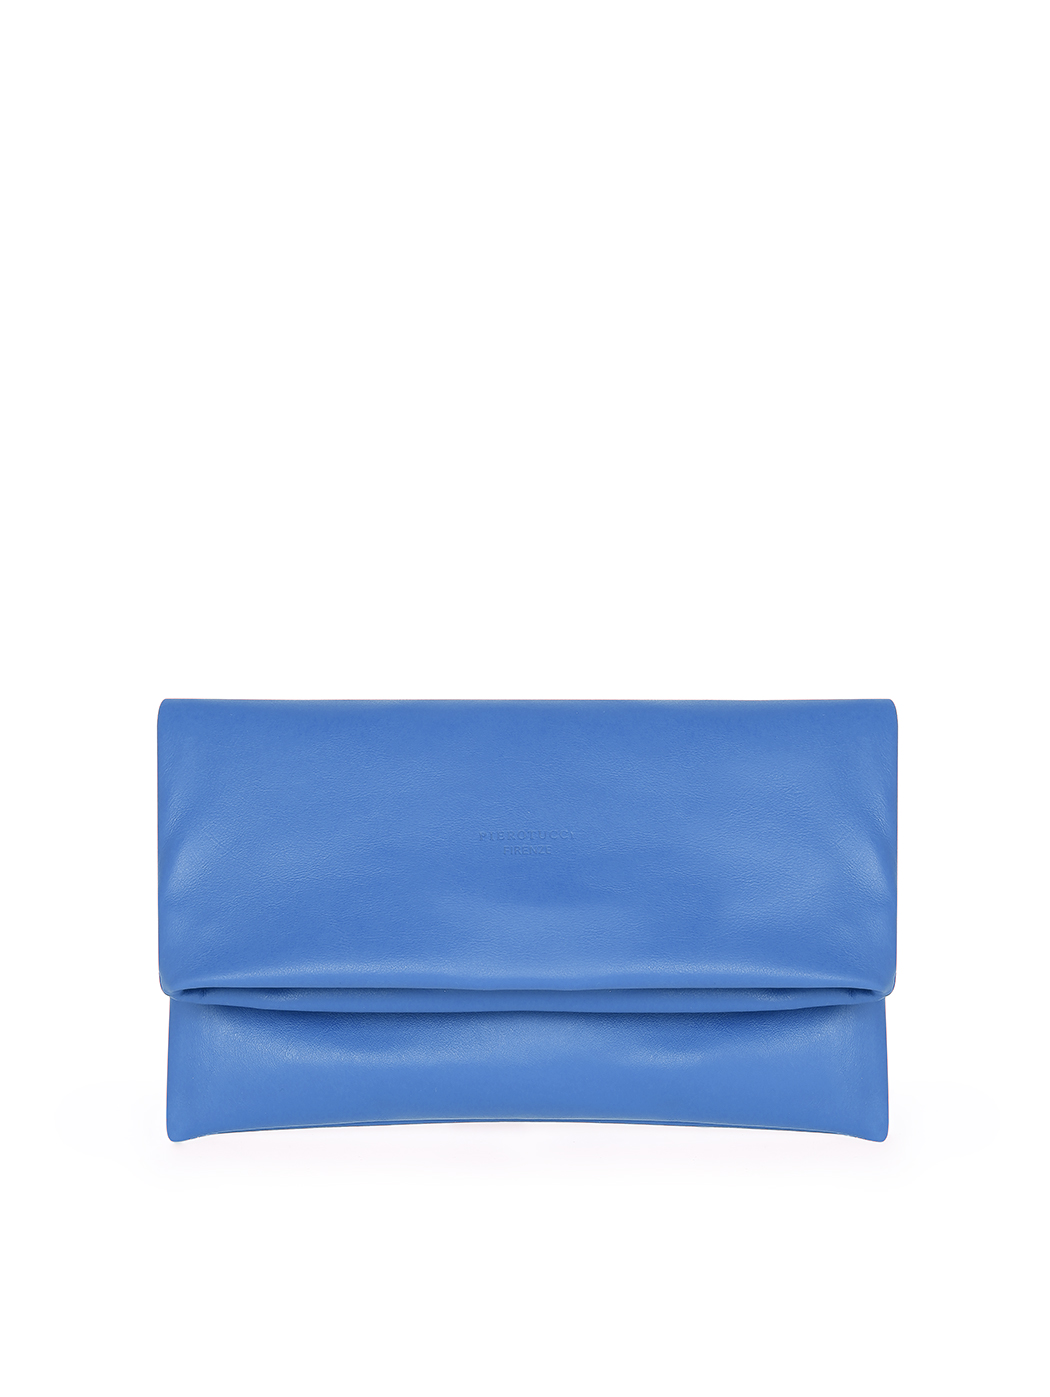 Кожаный клатч из натуральной кожи светло - голубого цвета